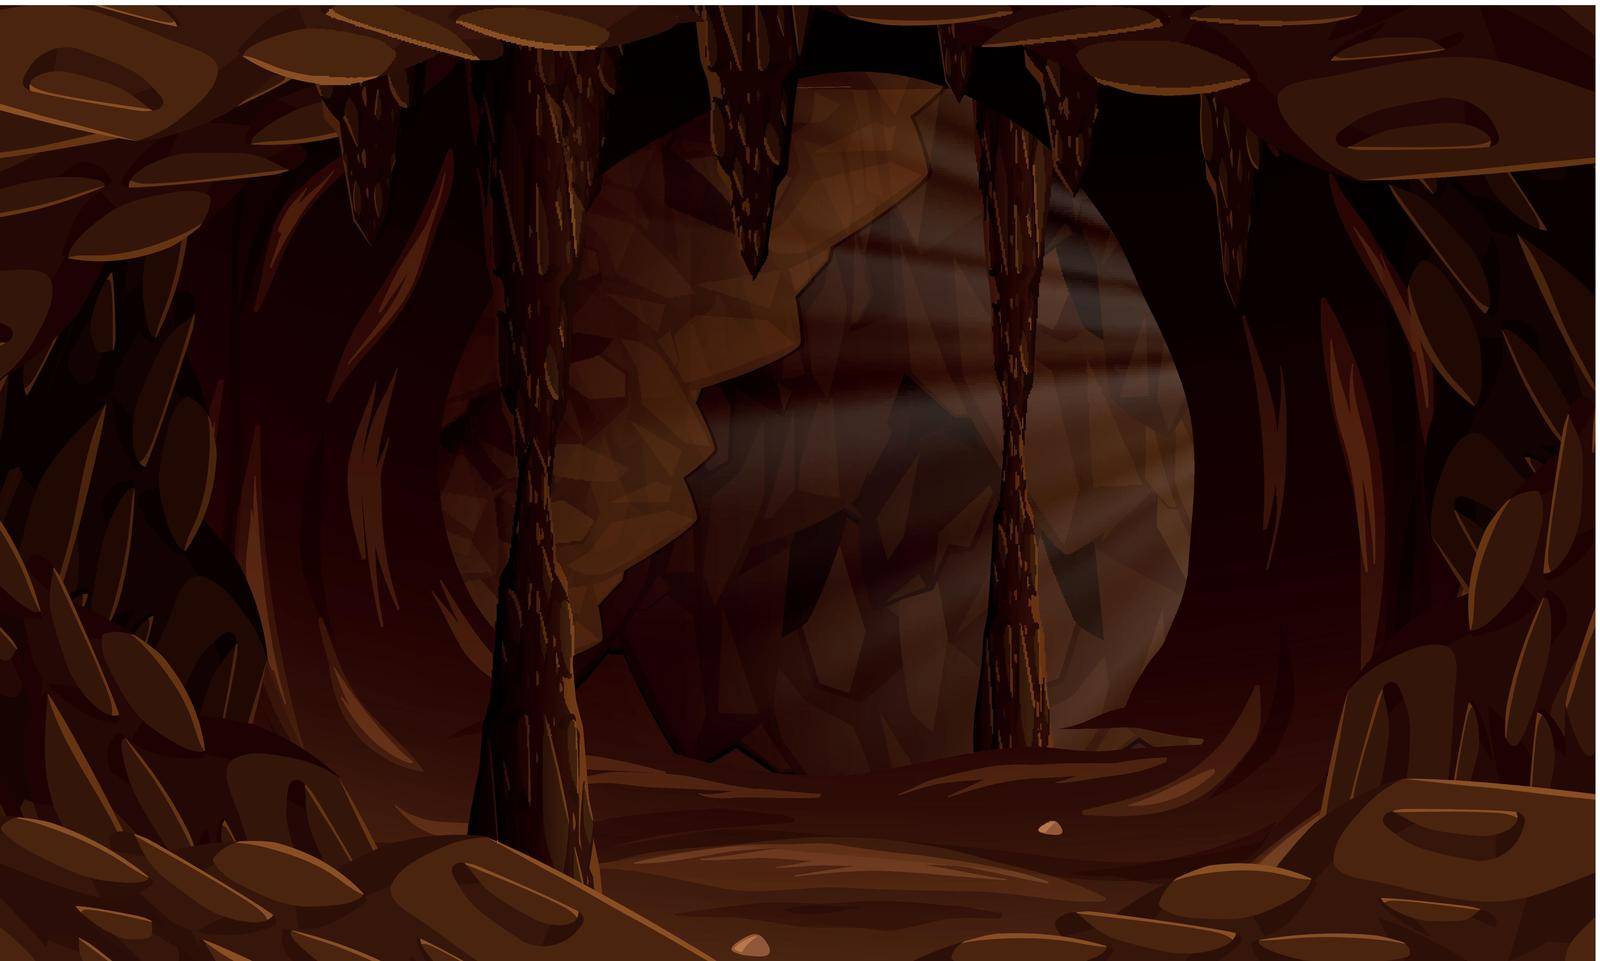 A dark cave landscape illustration